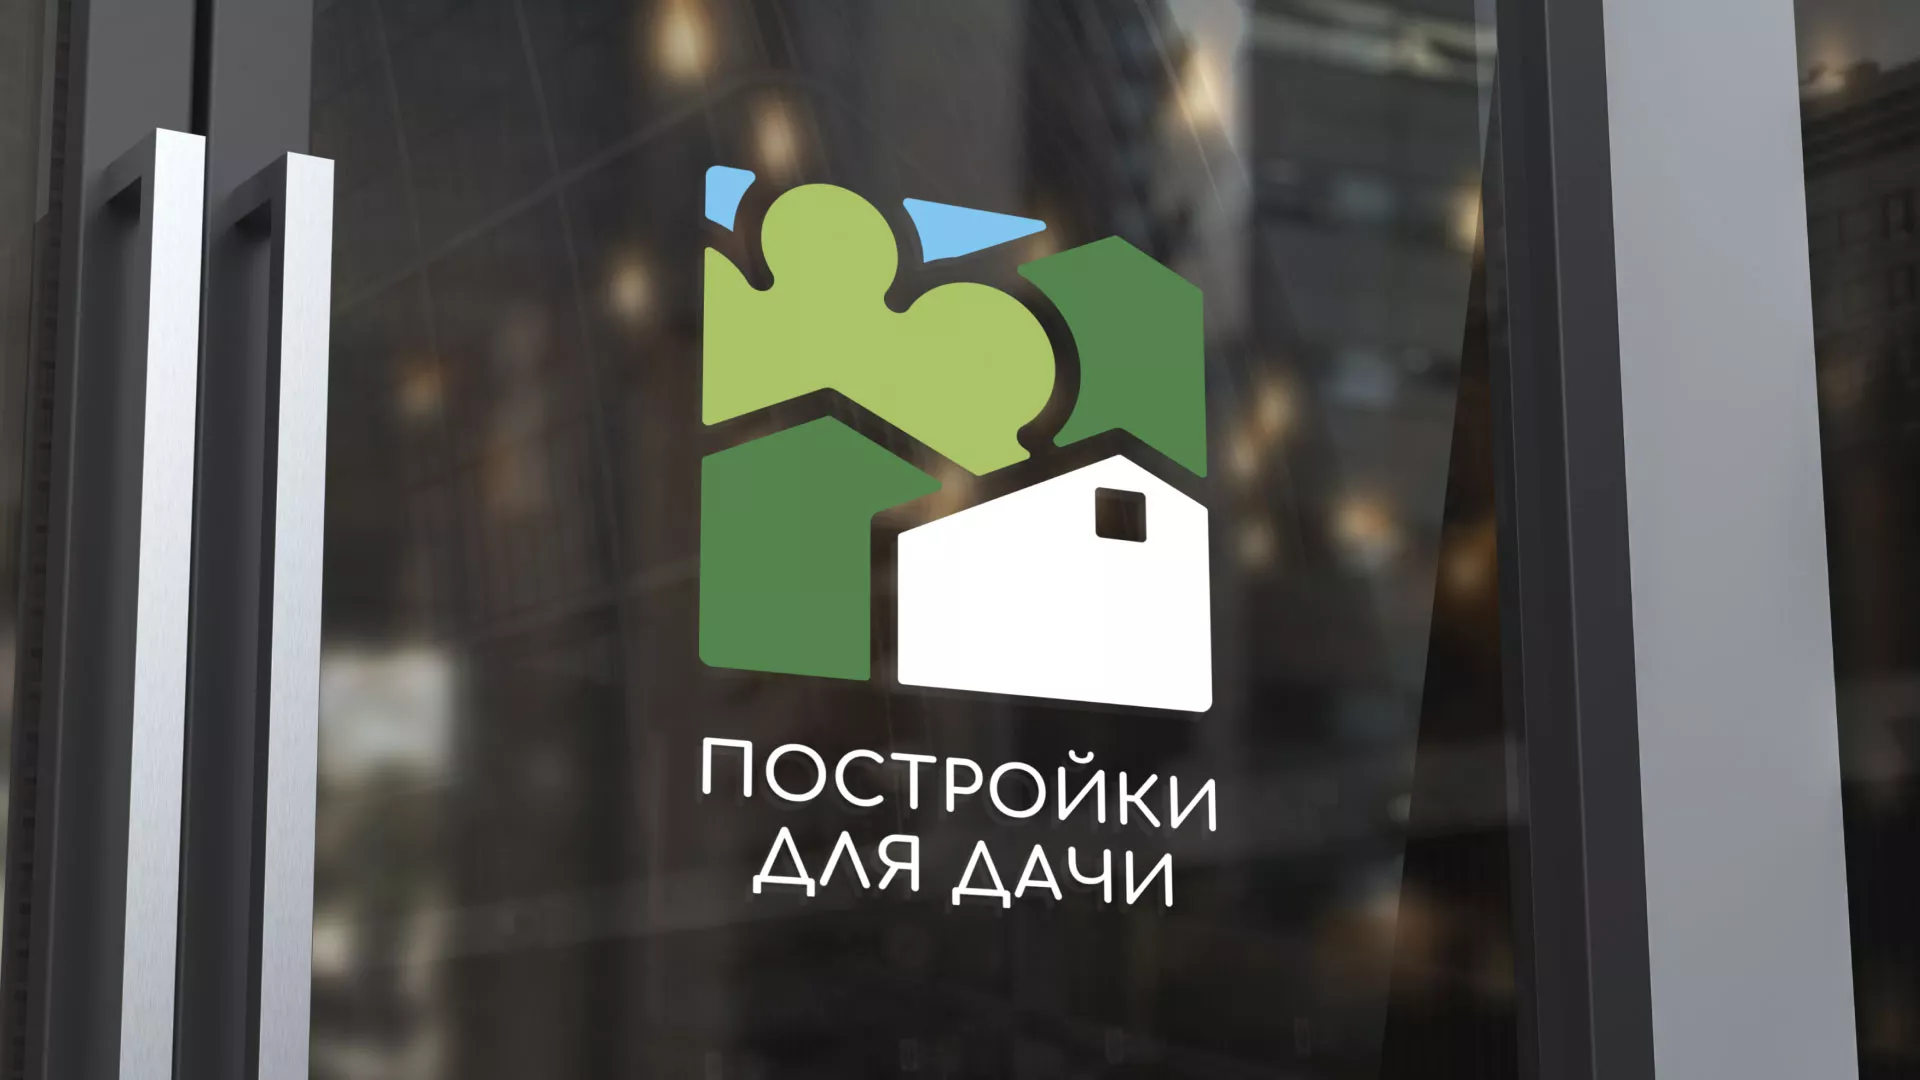 Разработка логотипа в Гусеве для компании «Постройки для дачи»